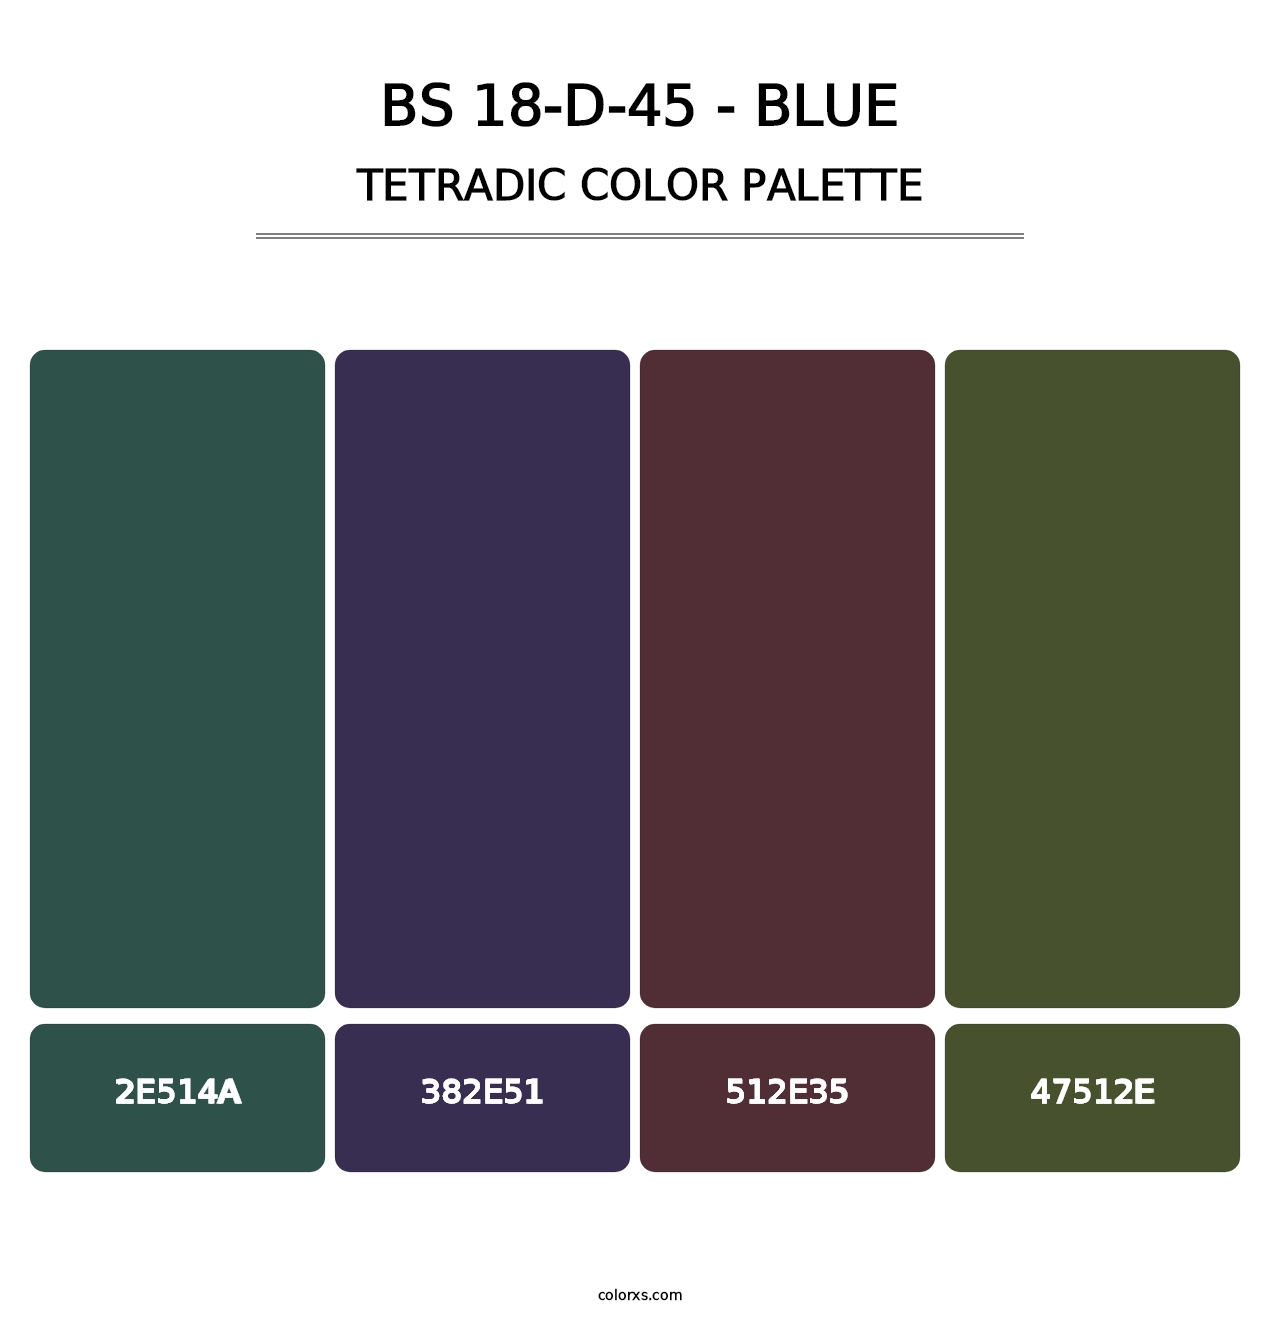 BS 18-D-45 - Blue - Tetradic Color Palette